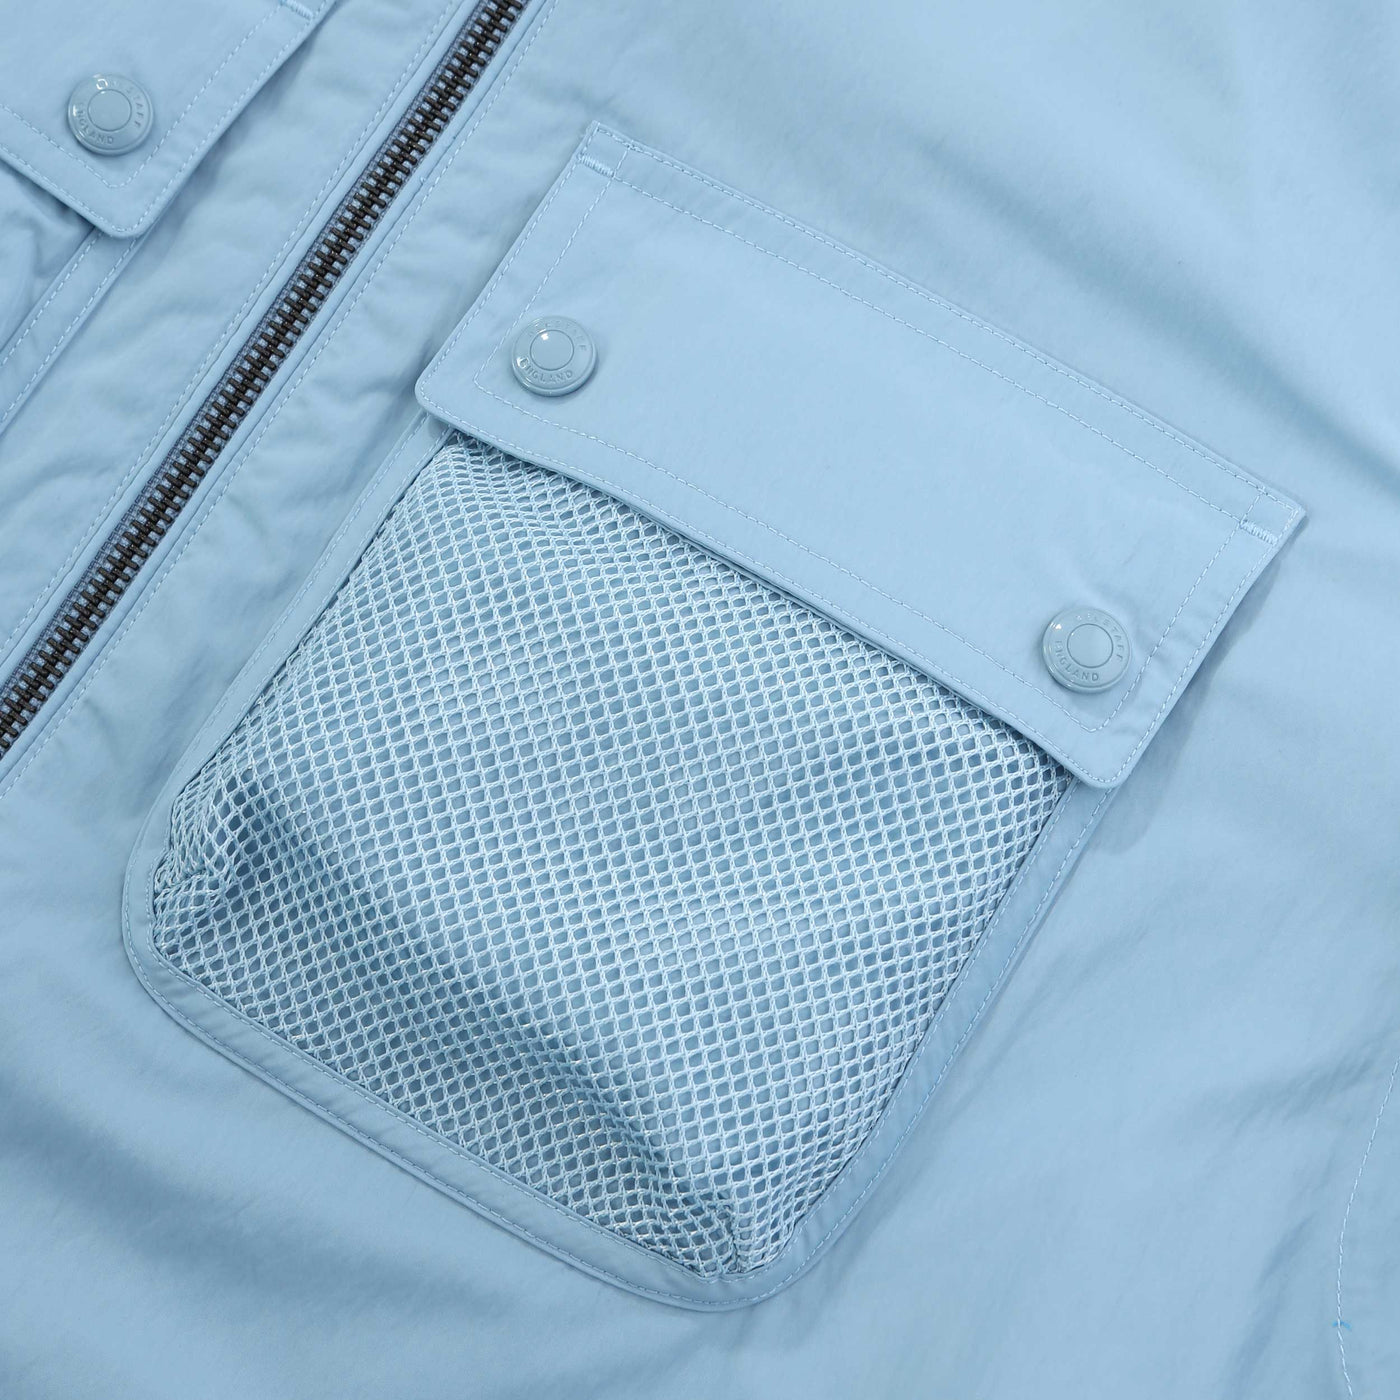 Belstaff Outline Overshirt in Skyline Blue Mesh Pocket